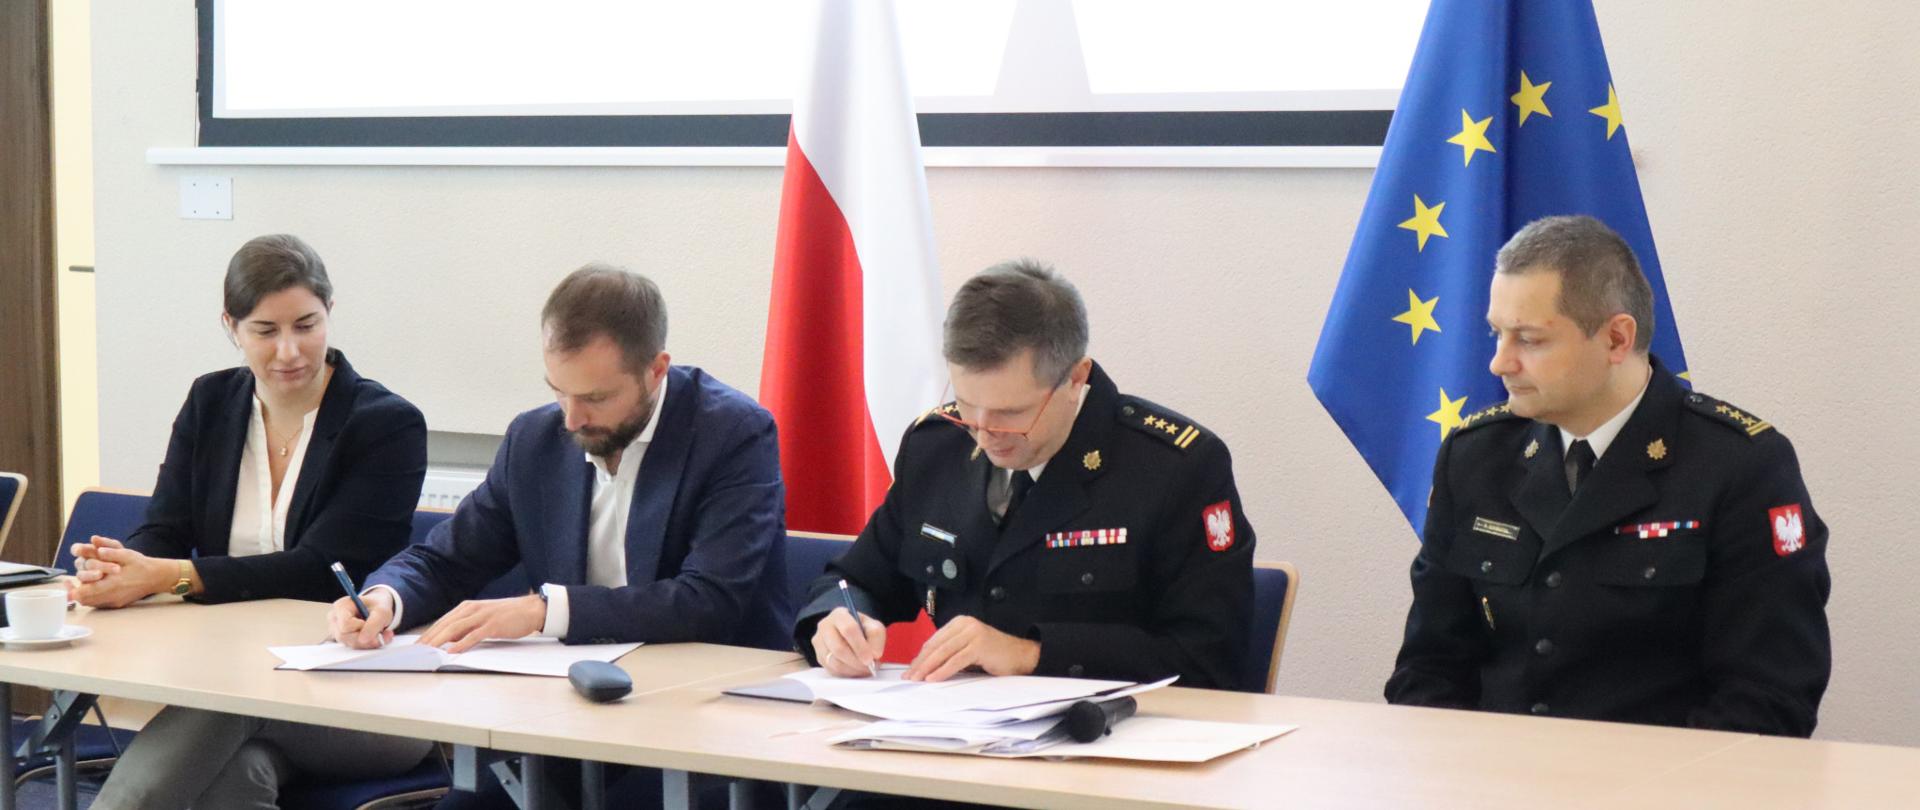 Na zdjęciu znajdują się przedstawiciele PSPA, dyrektor CNBOP-PIB oraz zastępca dyrektora Biura Przeciwdziałania Zagrożeniom KG PSP podczas podpisywania porozumienia przy stole konferencyjnym. W tle flaga Polski i UE 